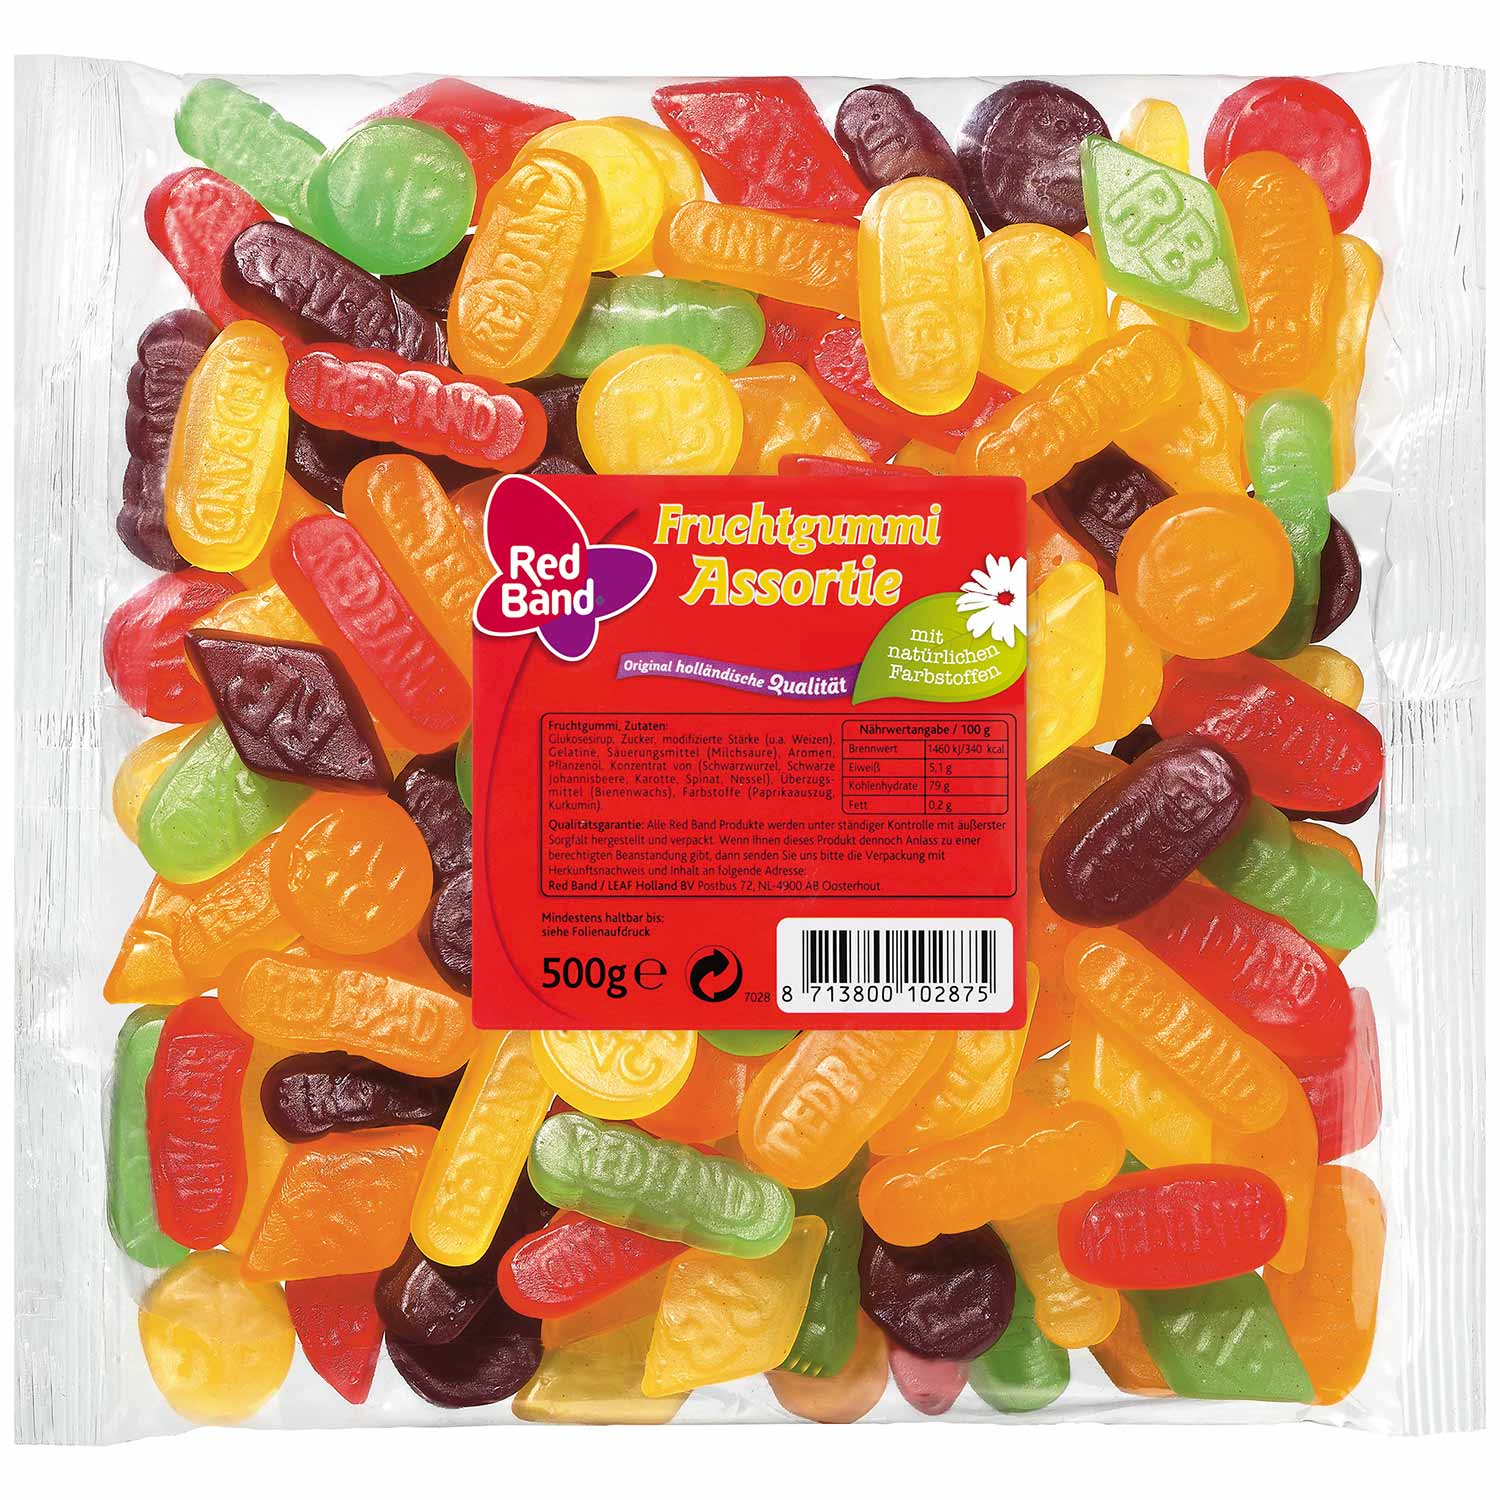 Red Band Fruchtgummi Assortie 500g | Online kaufen im World of Sweets Shop